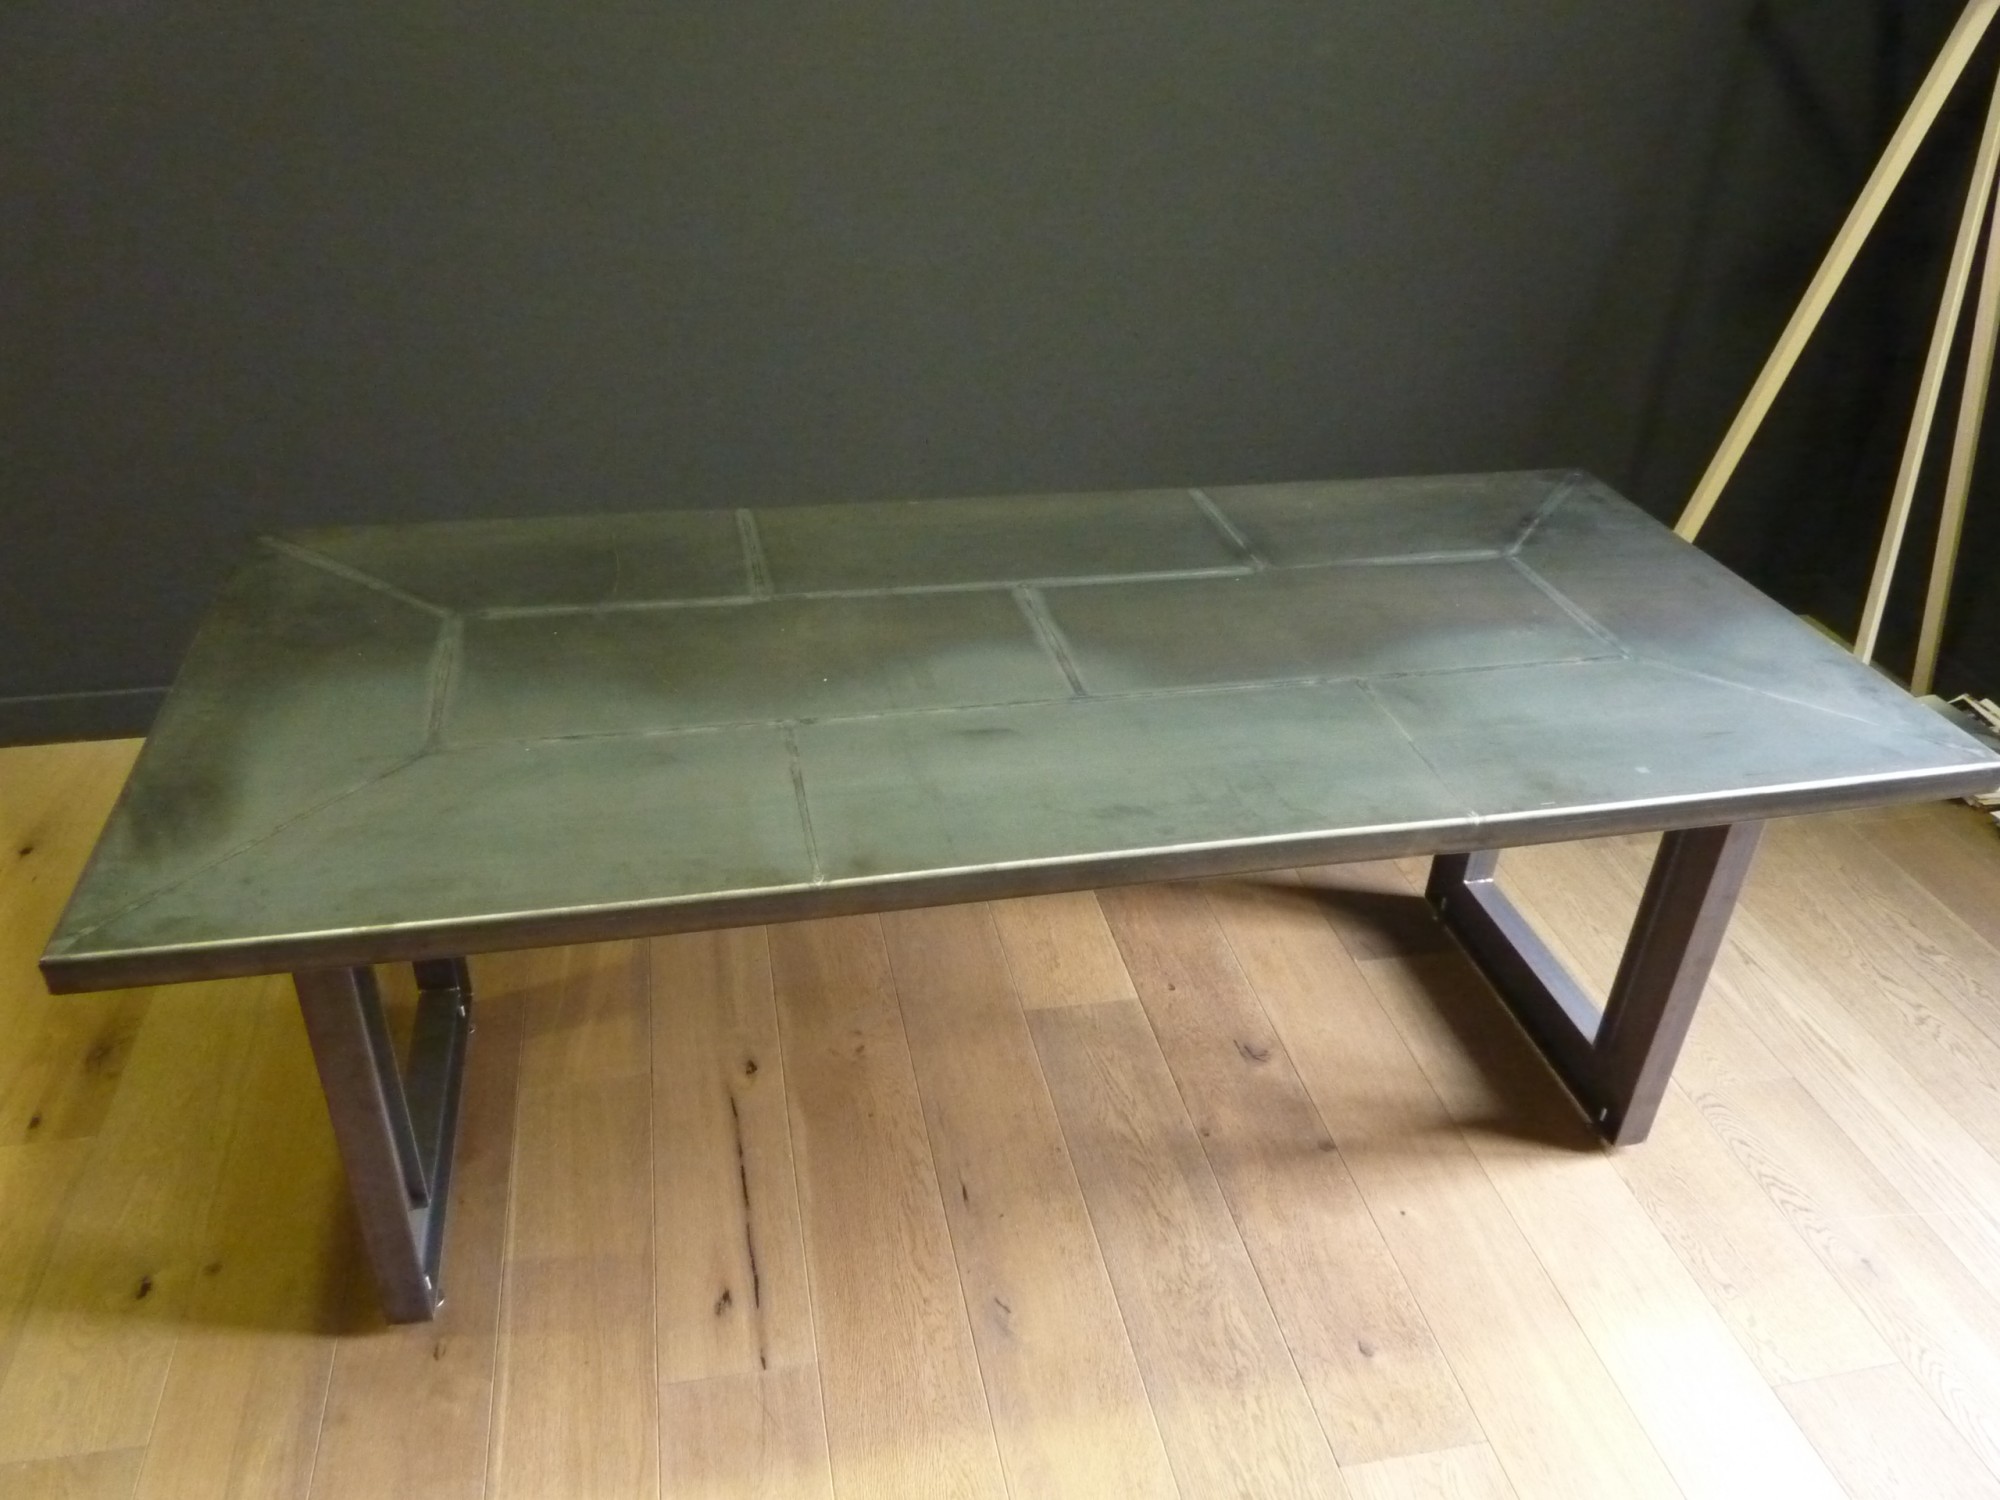 Mobilier design, table basse créée sur mesure pour habiller votre intérieur